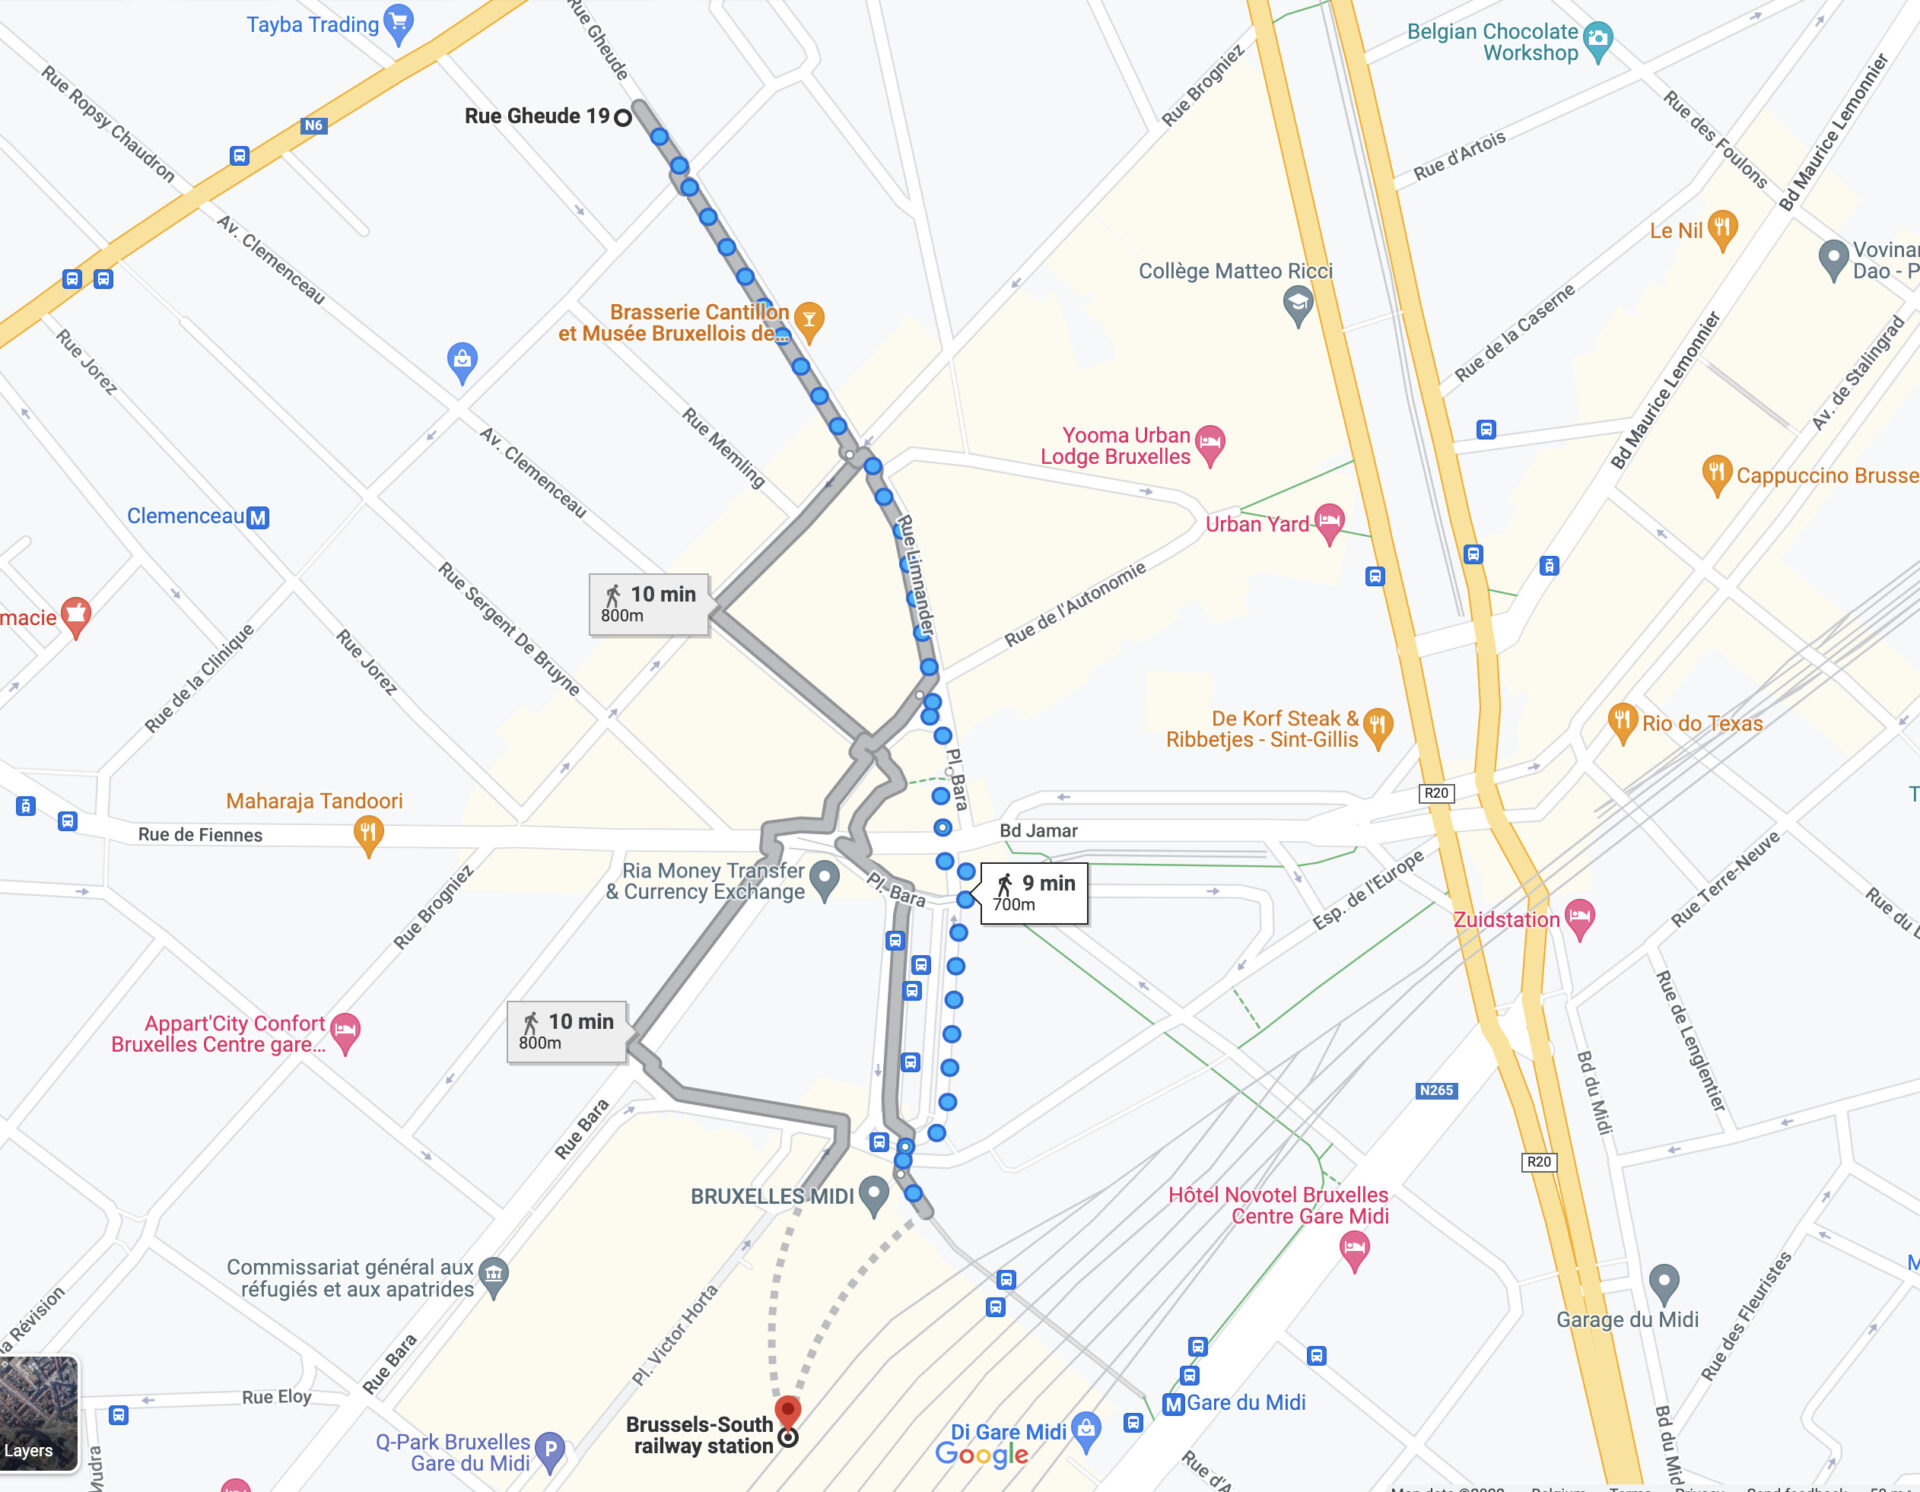 Plan to walk to Atelier15